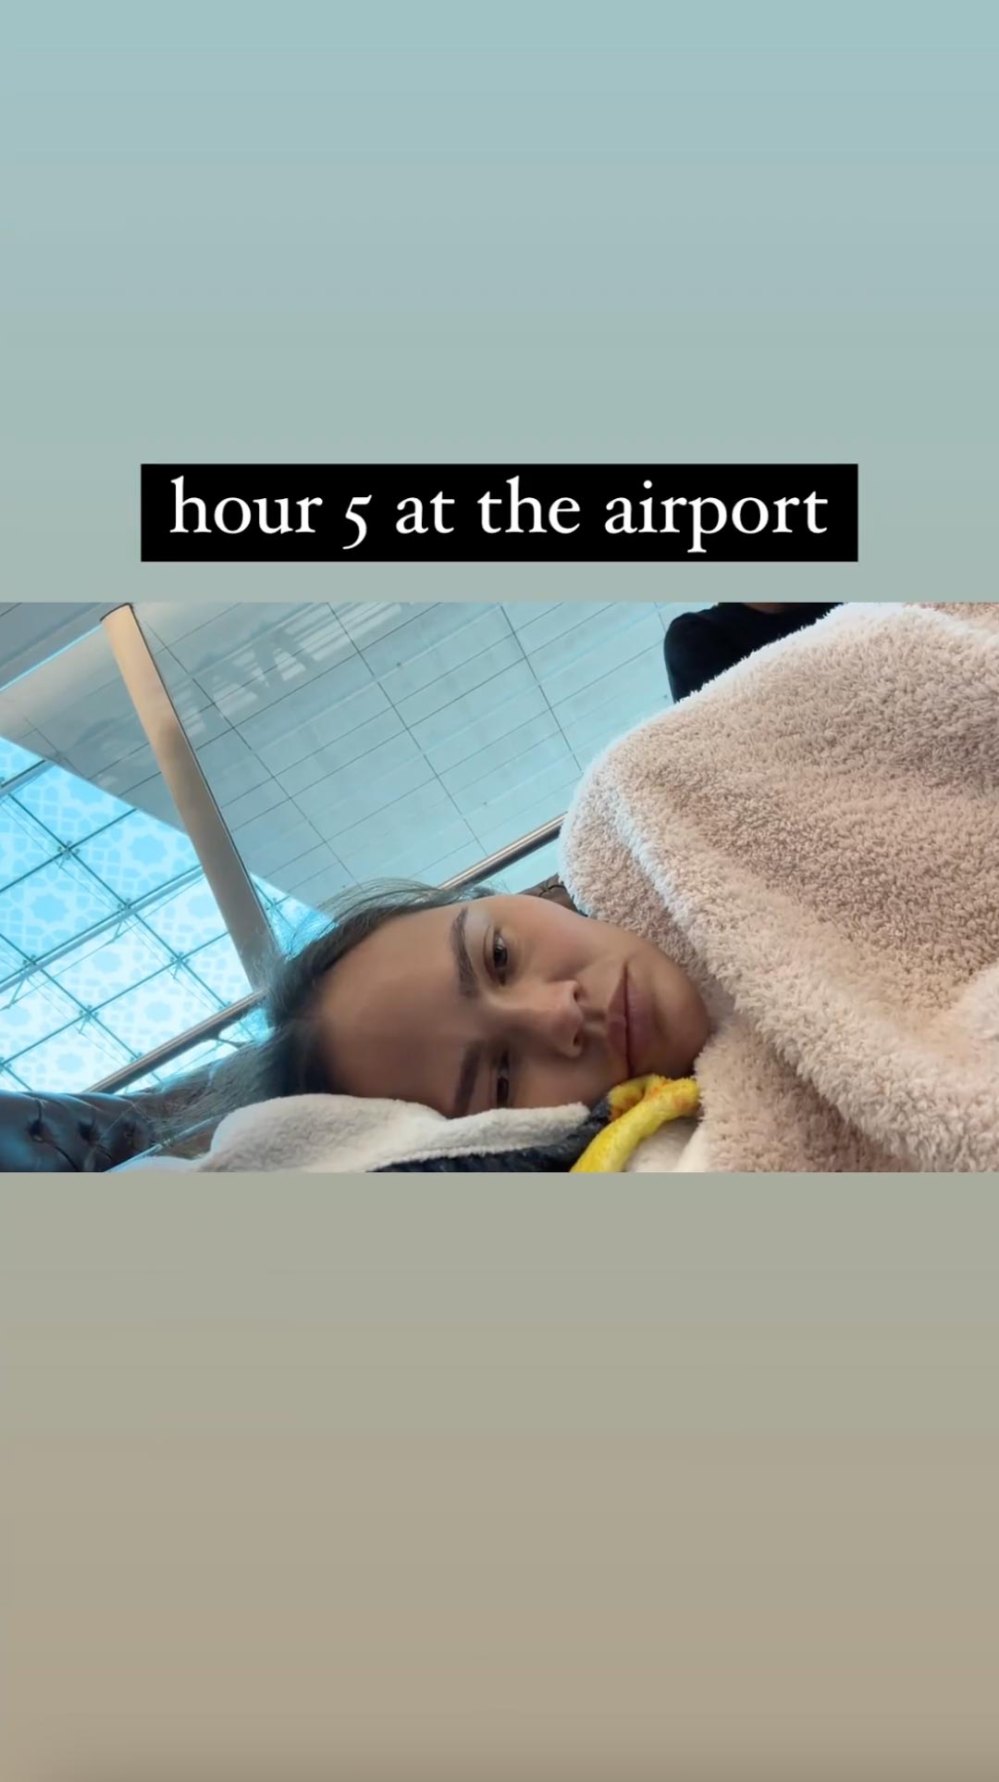 Chrissy Teigen schläft mit ihrer Familie auf der Etage des Flughafens Dubai